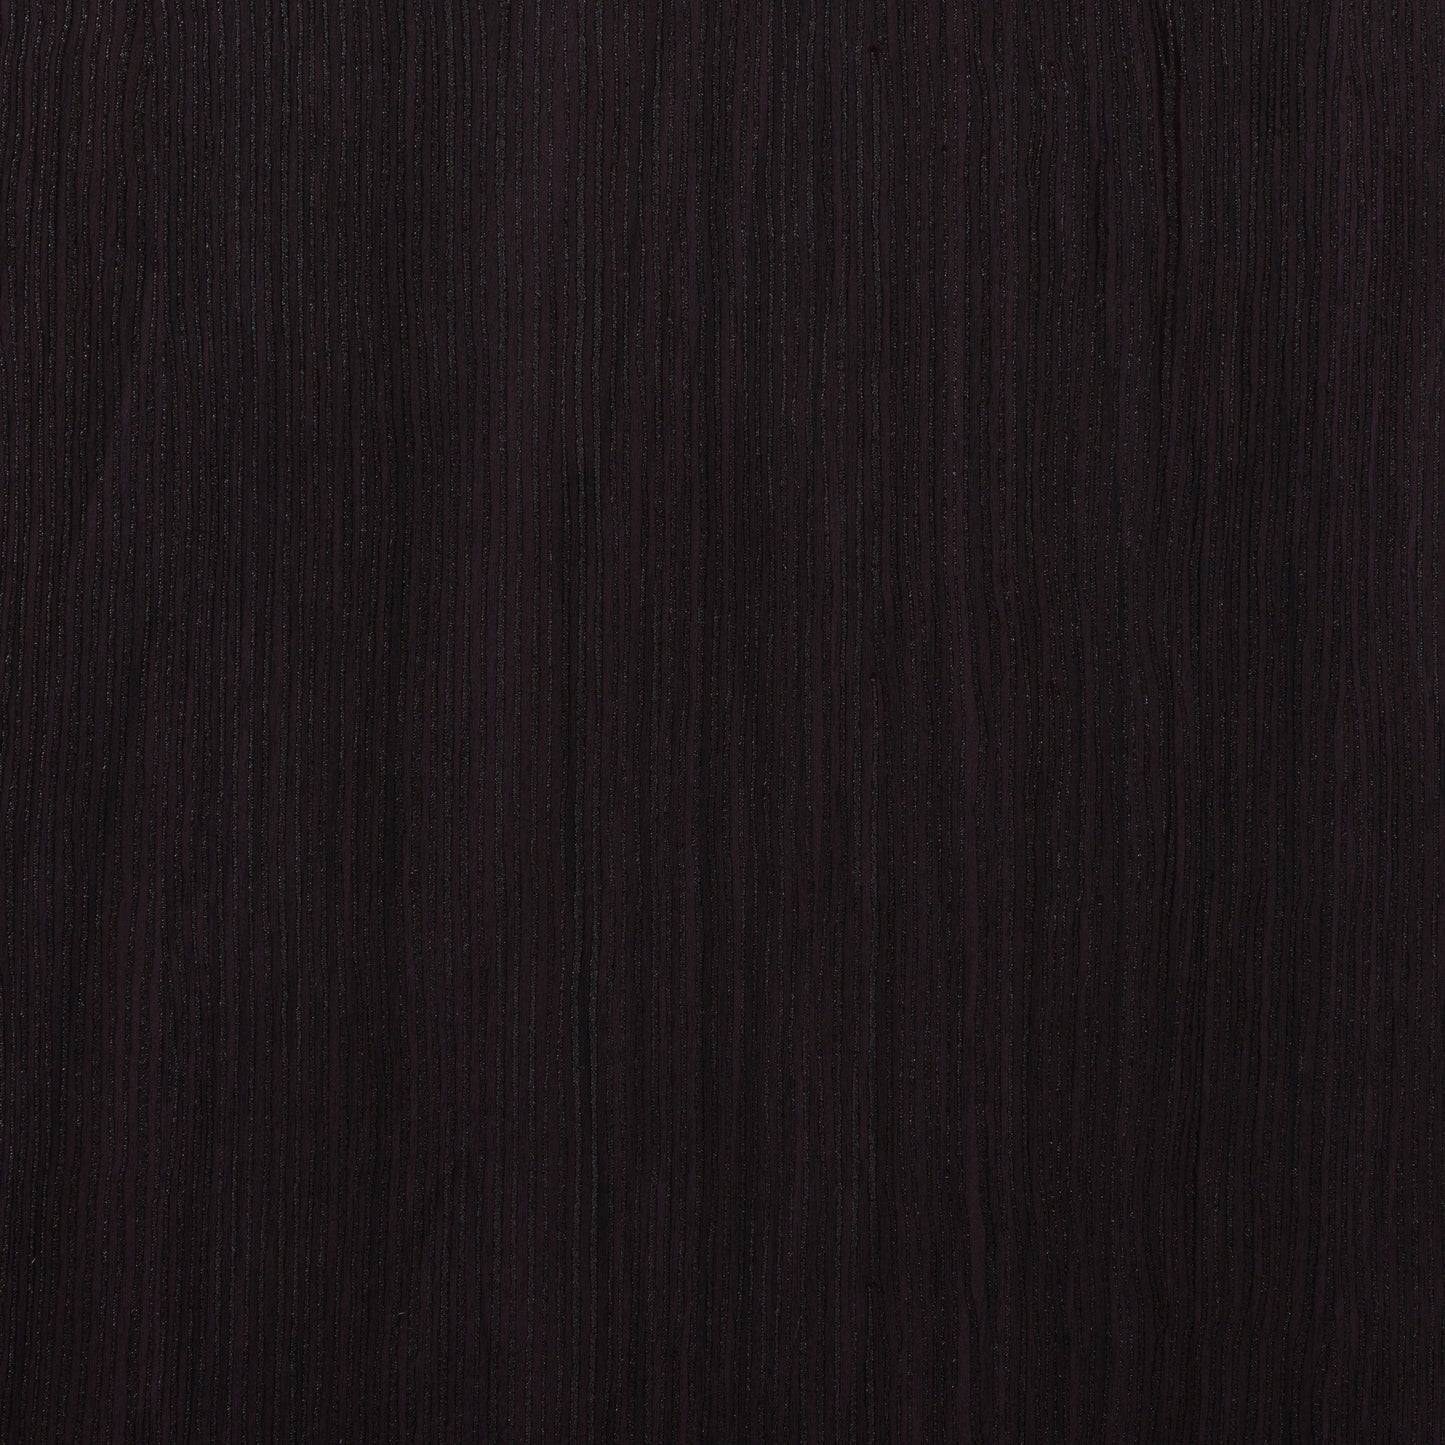 black oak Mid Century Modern Dresser Newport Collection detail image by CorLiving#color_black-oak